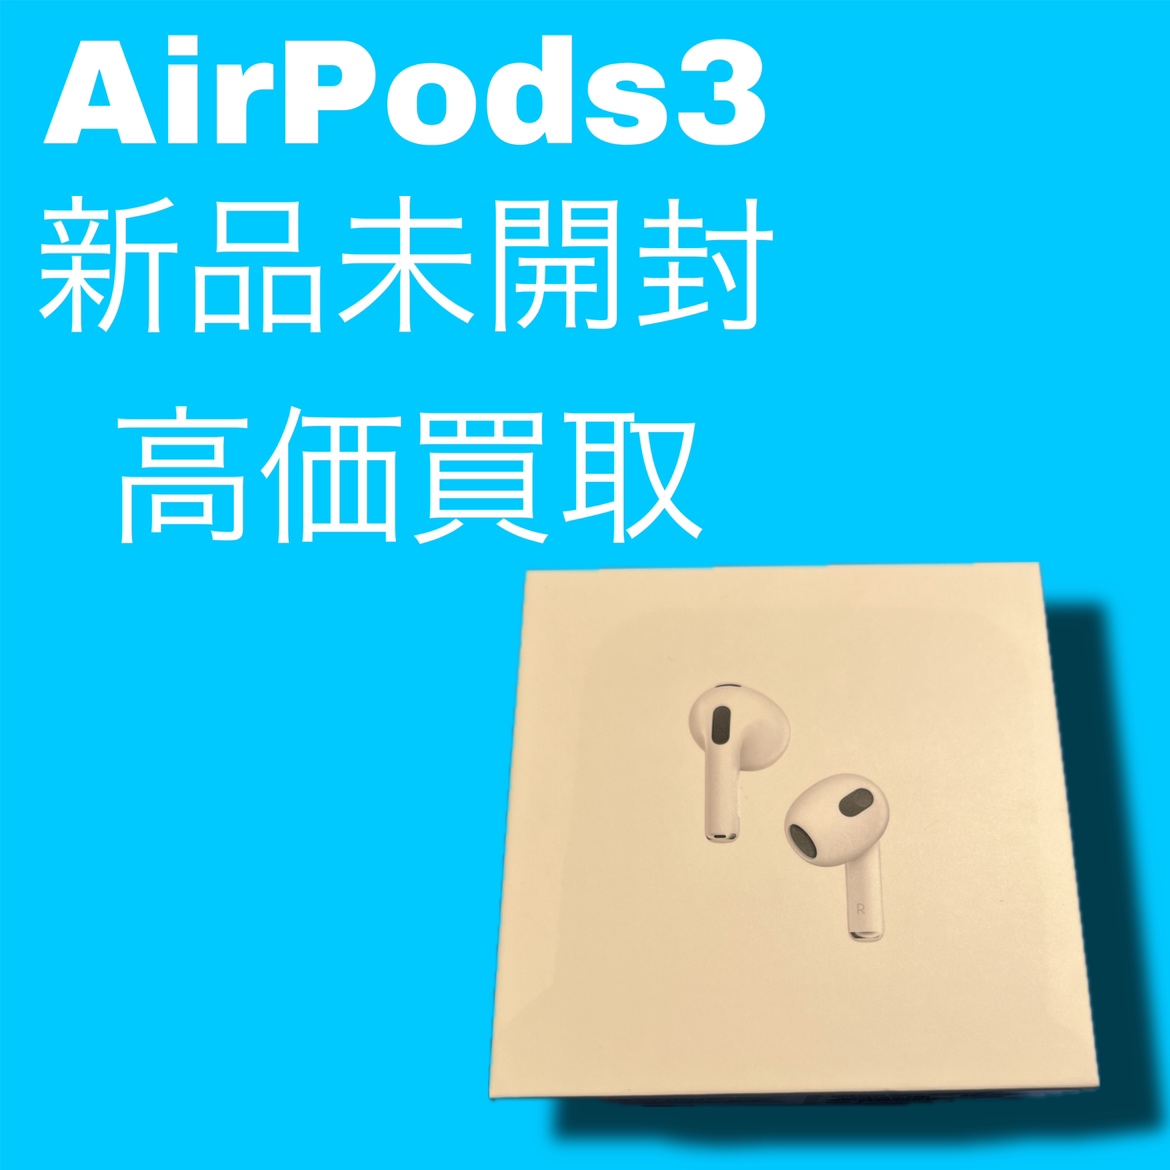 AirPods(第3世代) ・新品未開封品【天神地下街店】